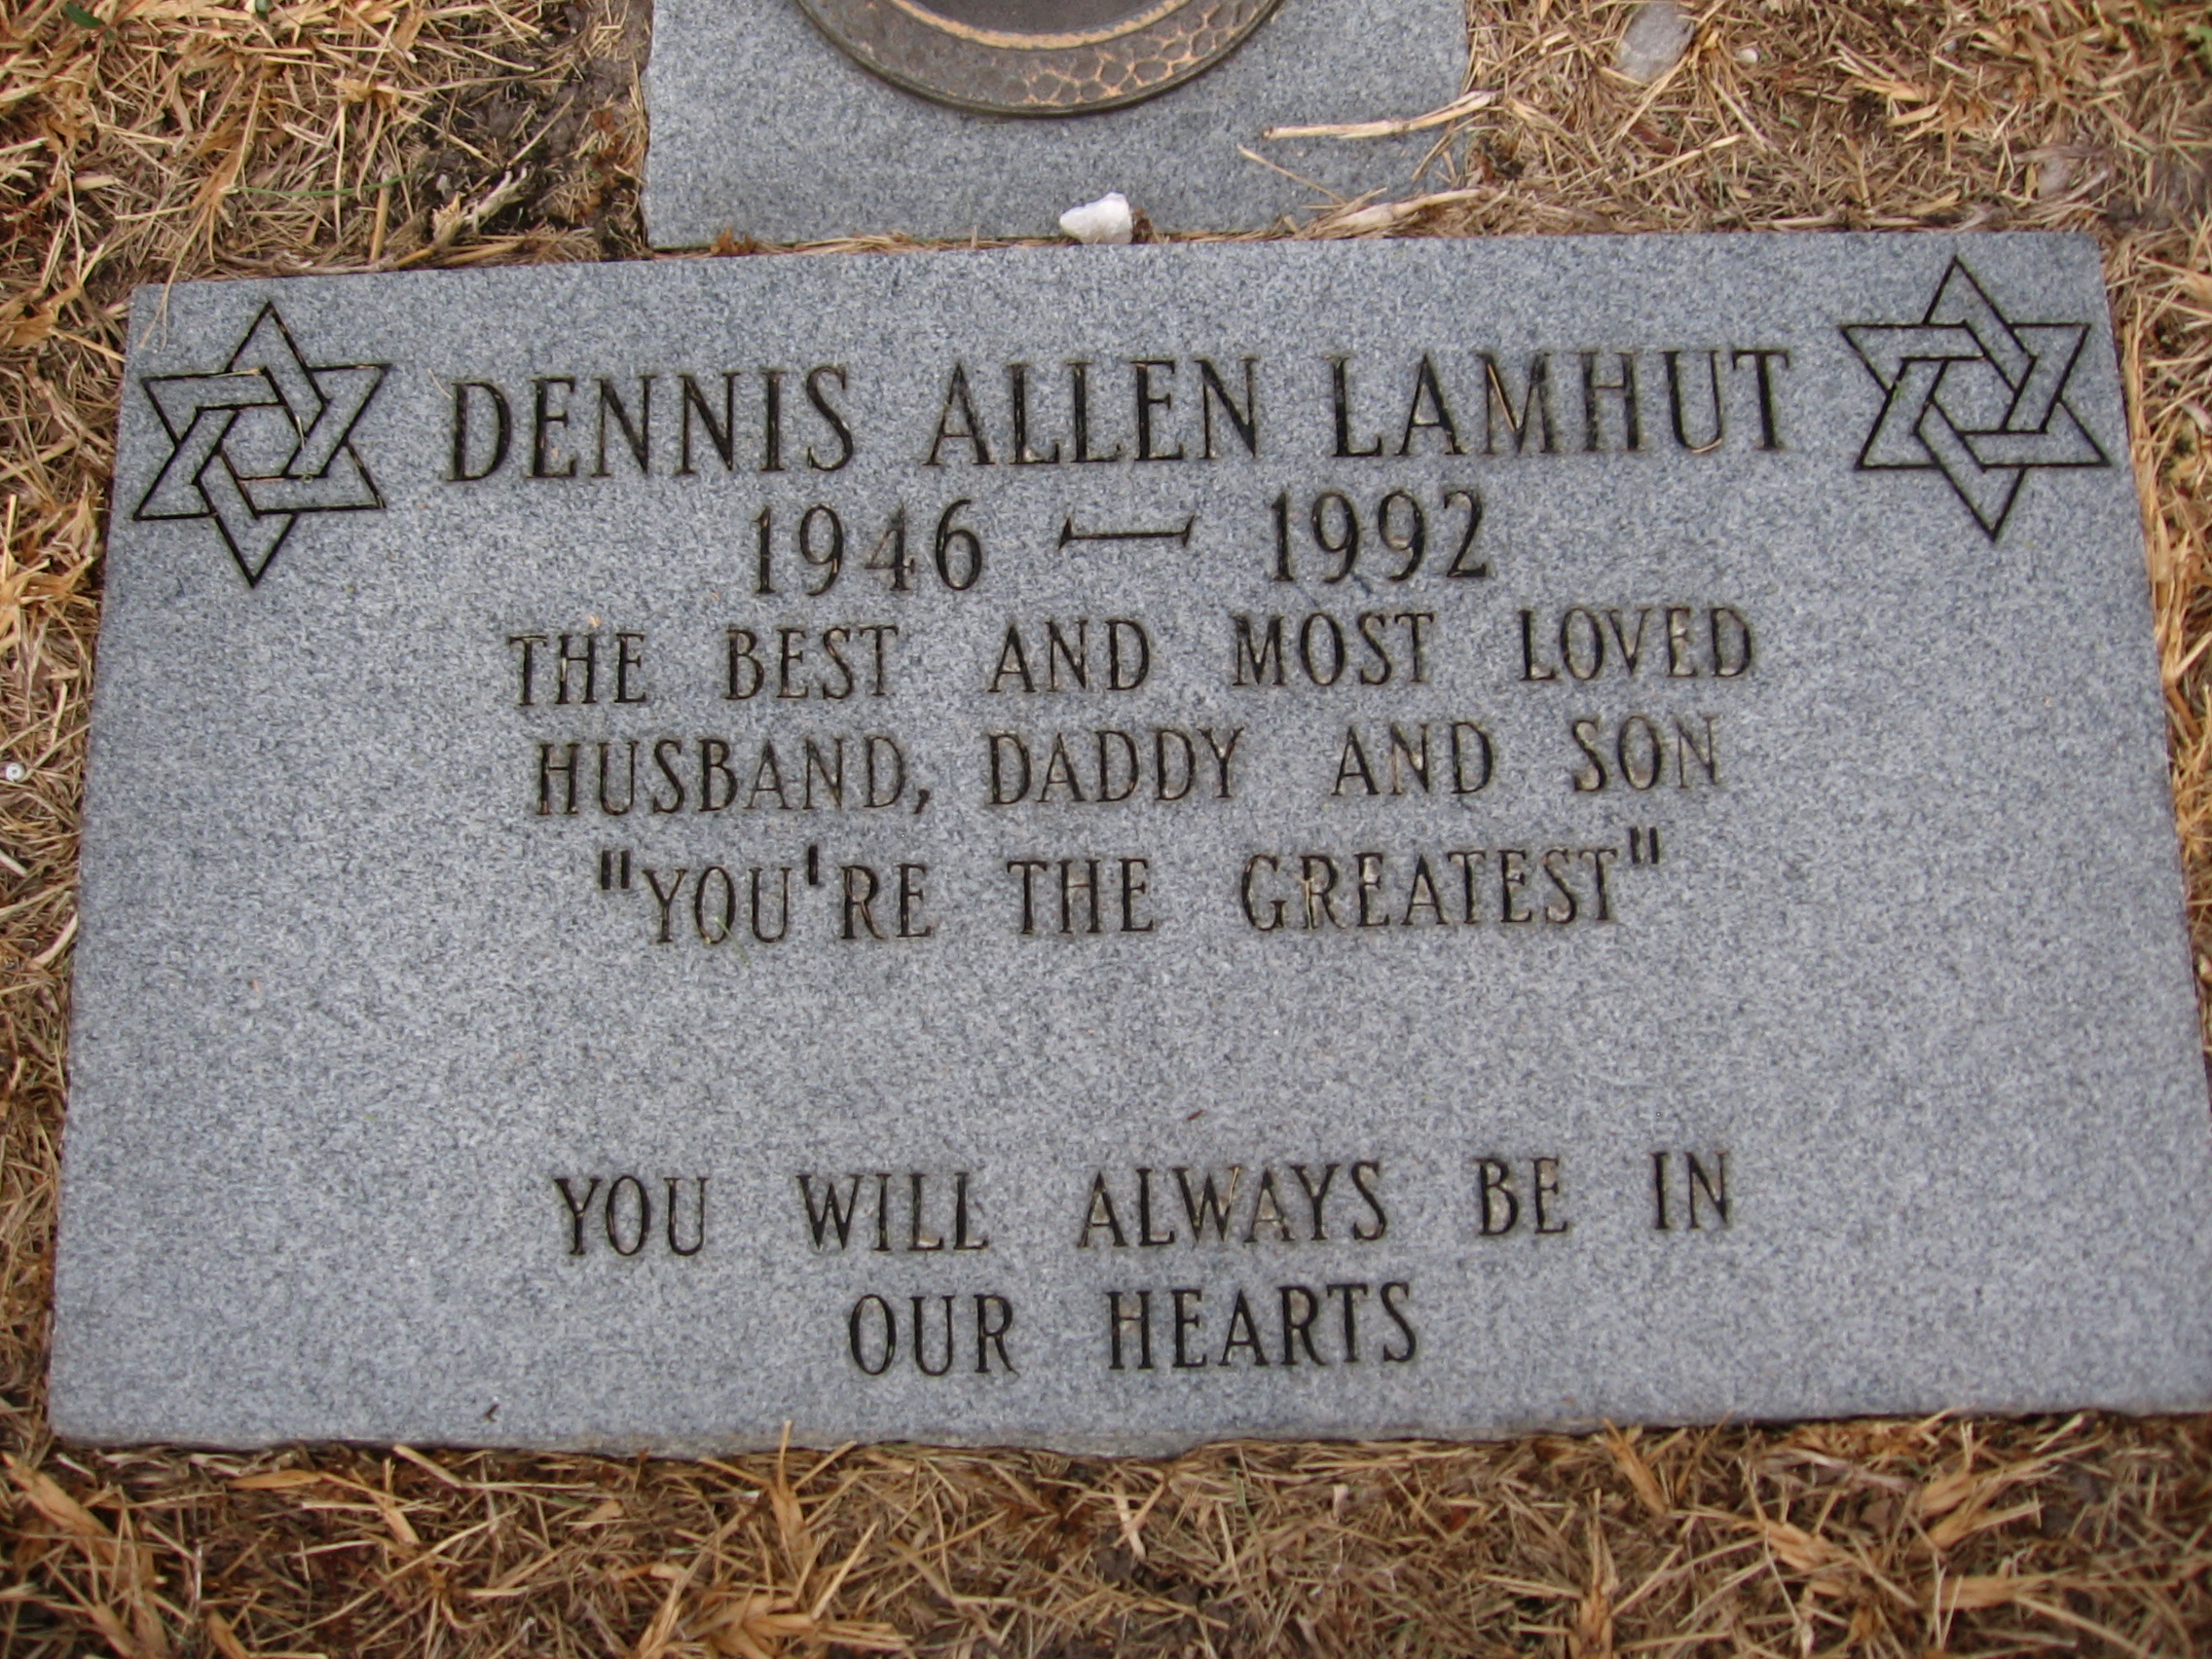 Dennis Allen Lamhut